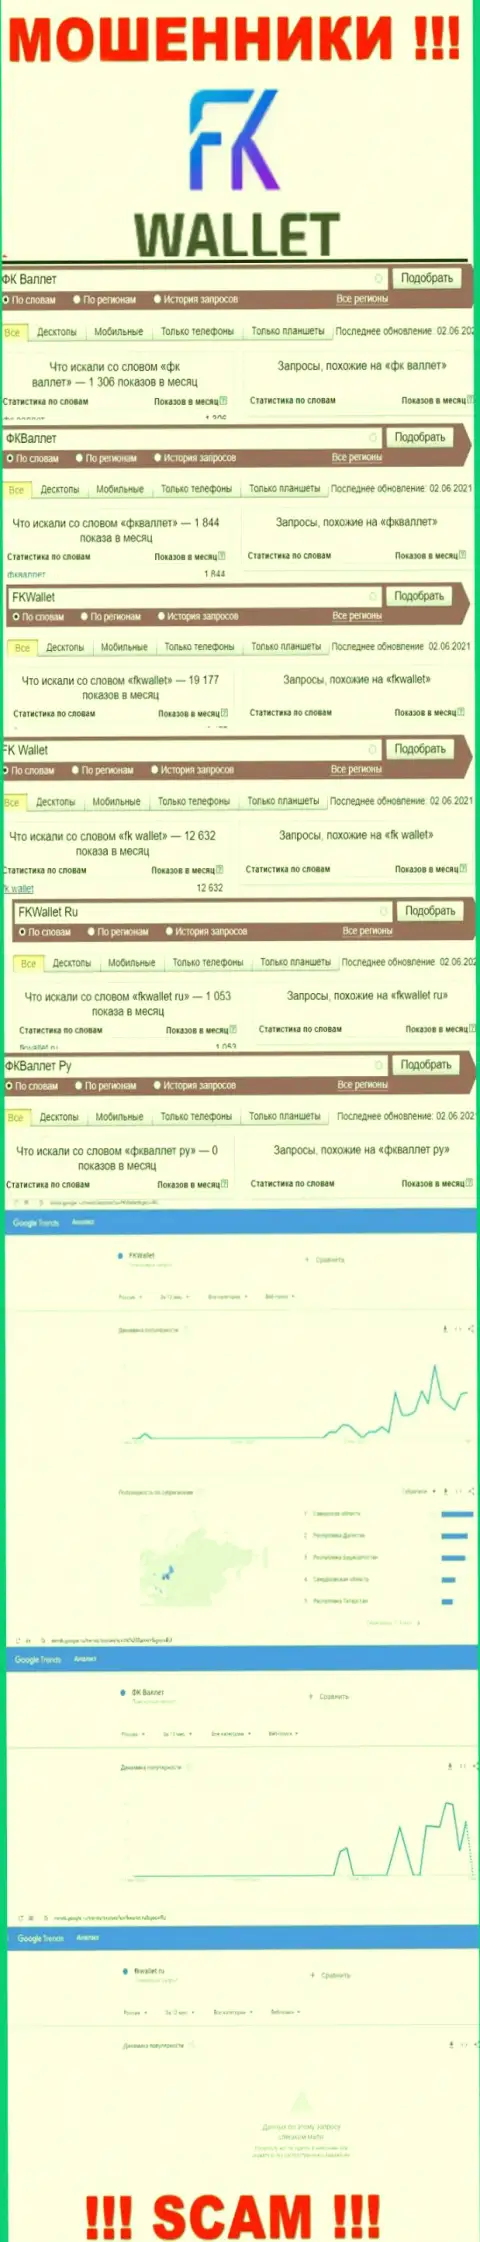 Скриншот статистических показателей онлайн запросов по преступно действующей конторе FKWallet